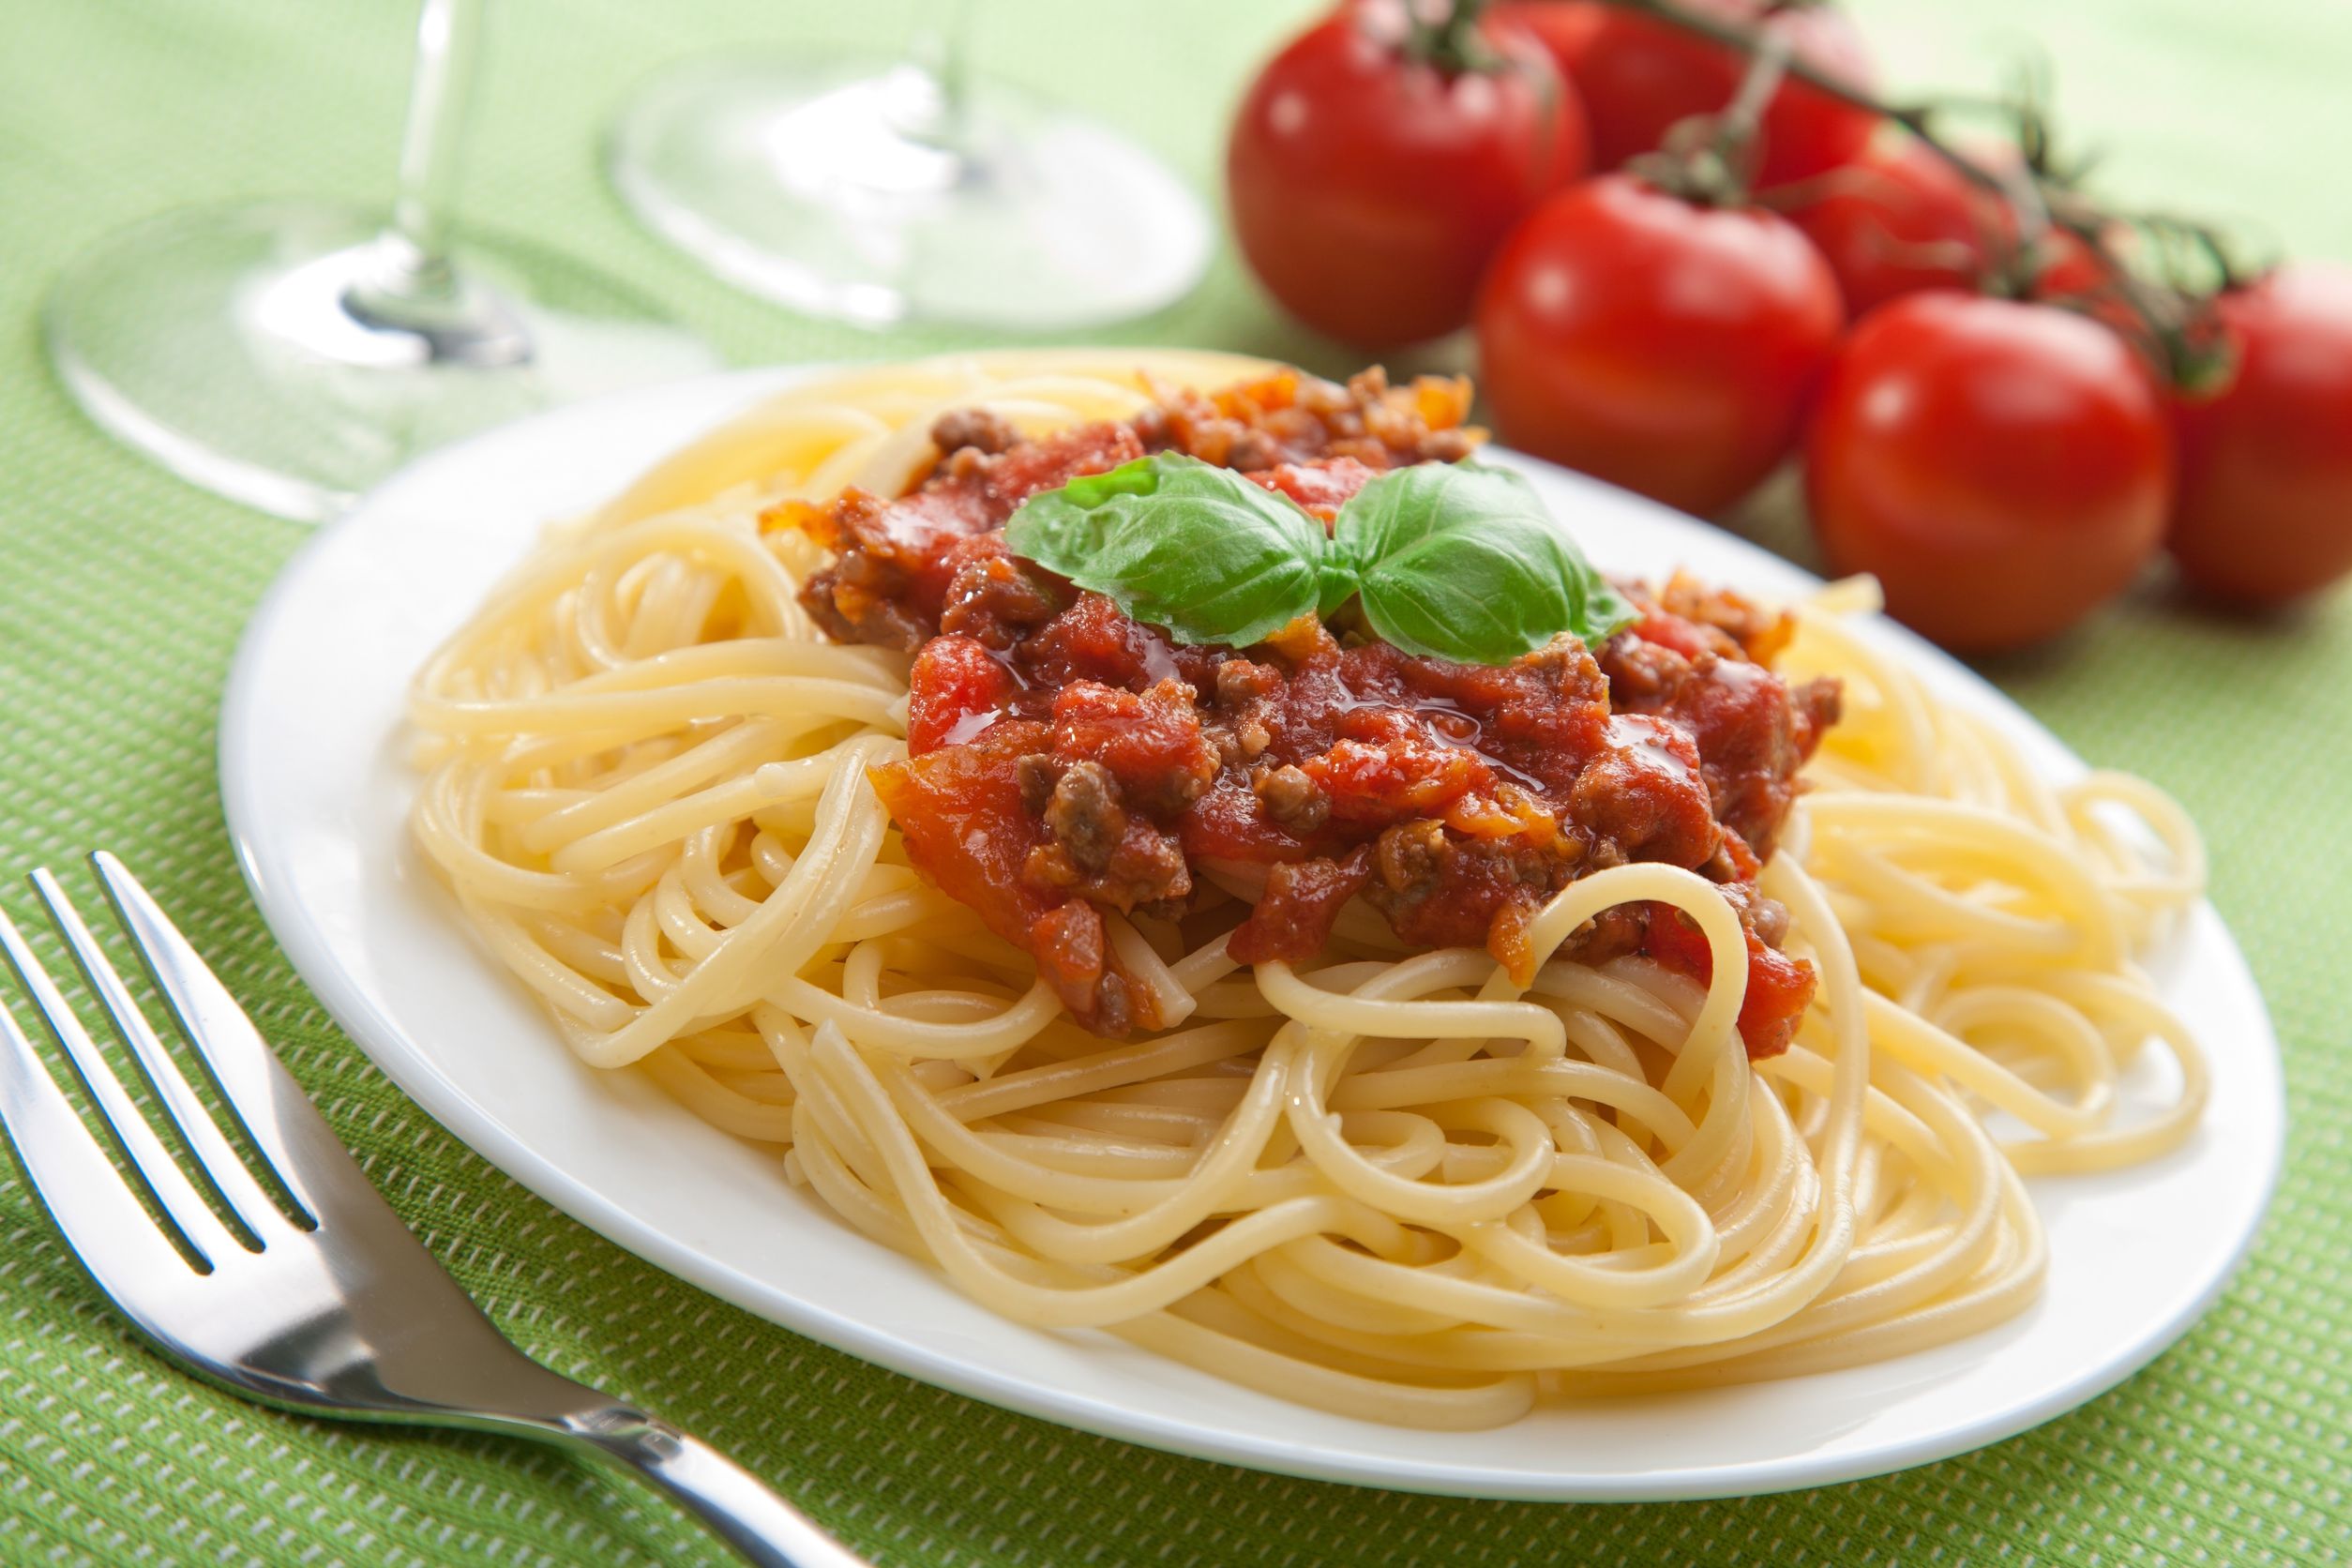 Спагетти болоньезе томатная паста. Спагетти с соусом Болонез. Спагетти болоньезе классический. Спагетти неаполитано. Томатная паста болоньезе.